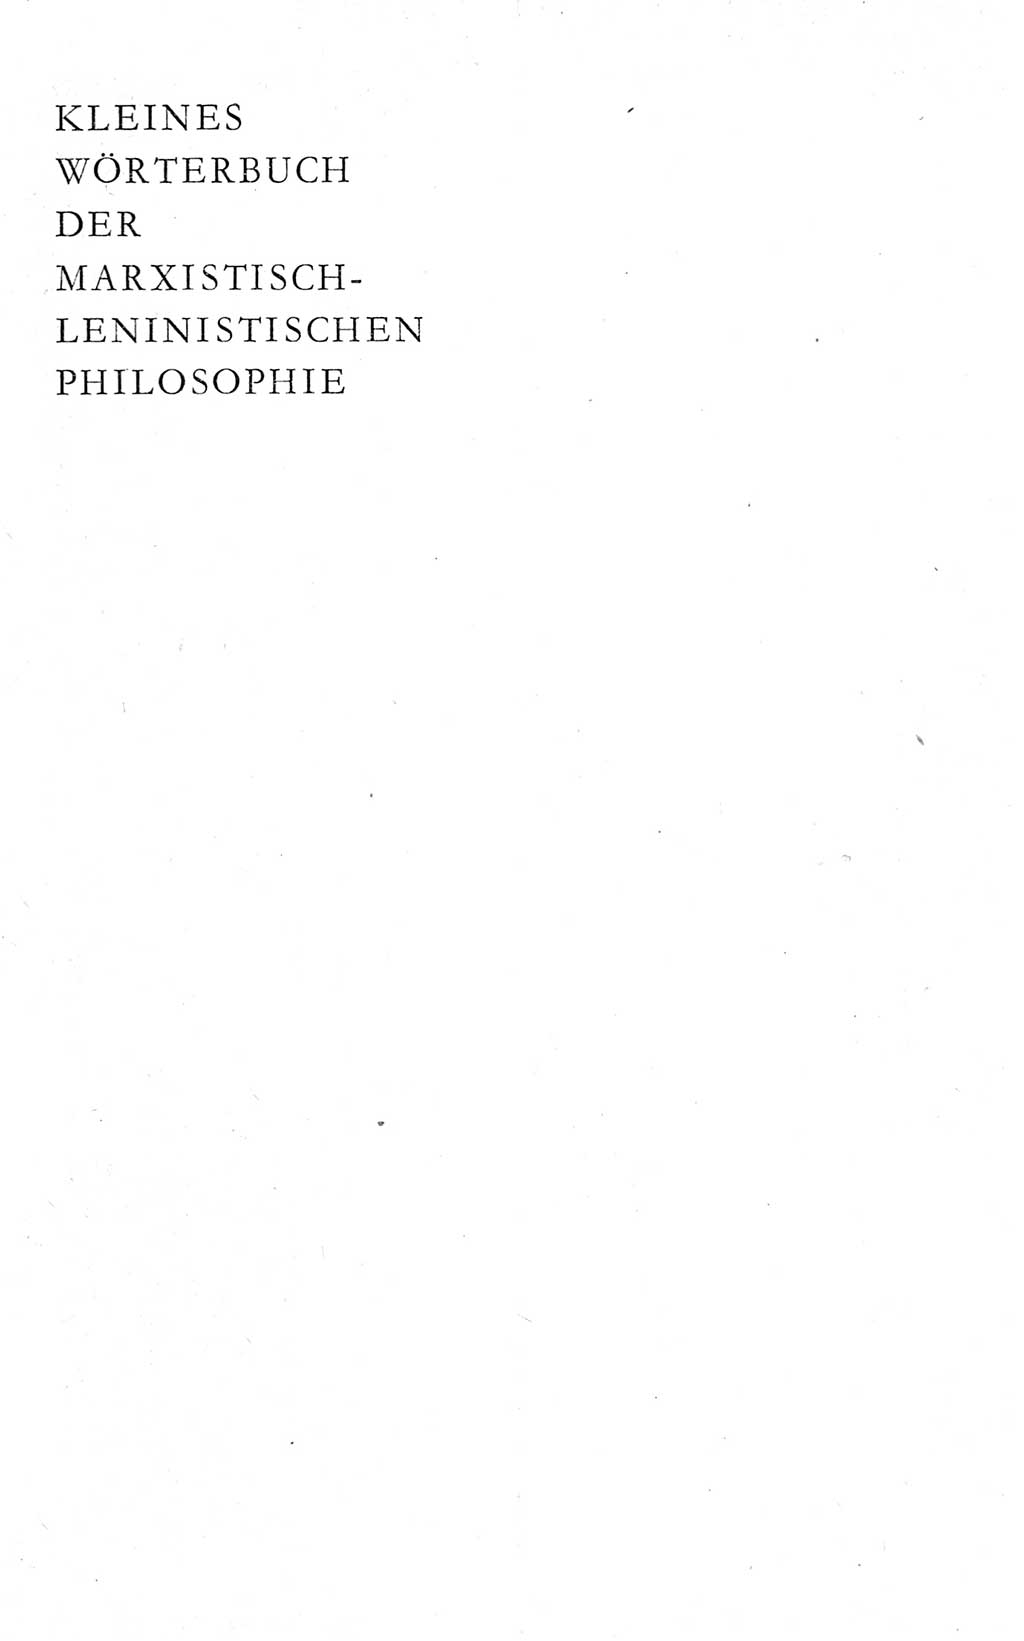 Kleines Wörterbuch der marxistisch-leninistischen Philosophie [Deutsche Demokratische Republik (DDR)] 1974, Seite 1 (Kl. Wb. ML Phil. DDR 1974, S. 1)